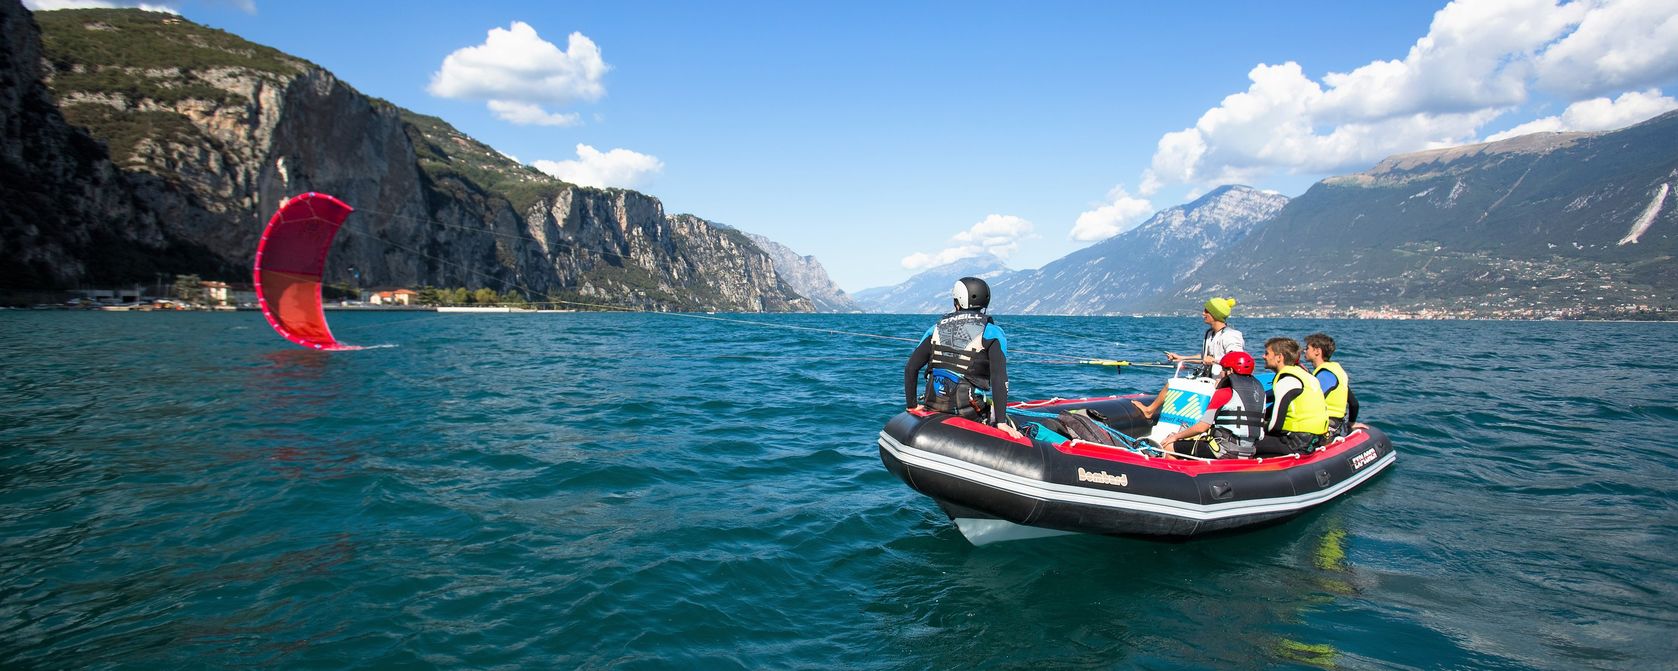 Kiteboarding lessons Italy Lake Garda